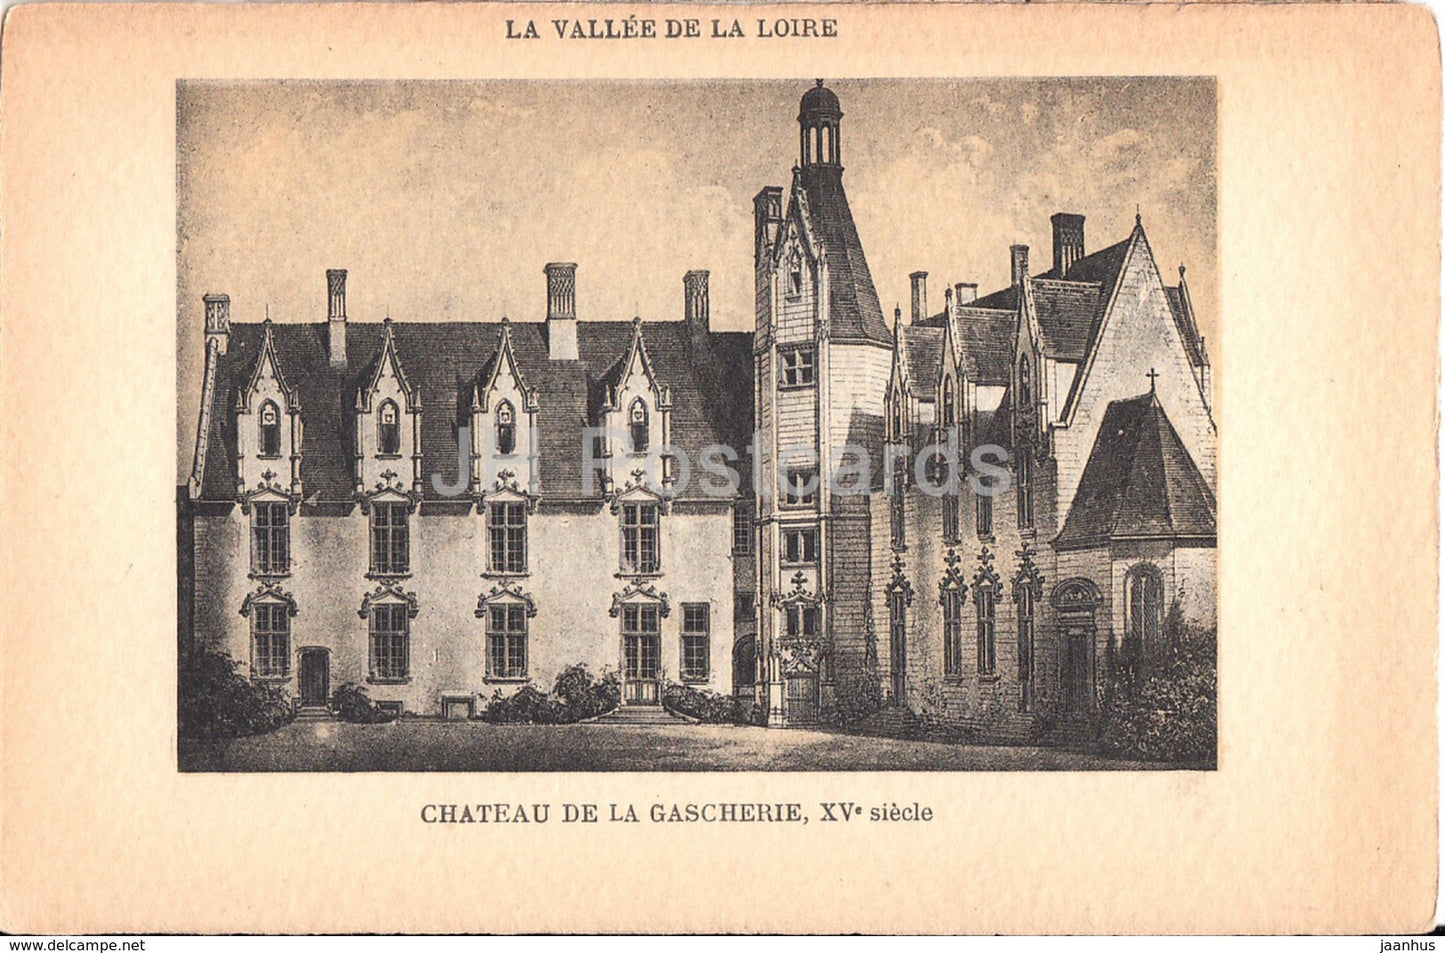 Chateau de La Gascherie - La Vallee de la Loire - castle - old postcard - France - unused